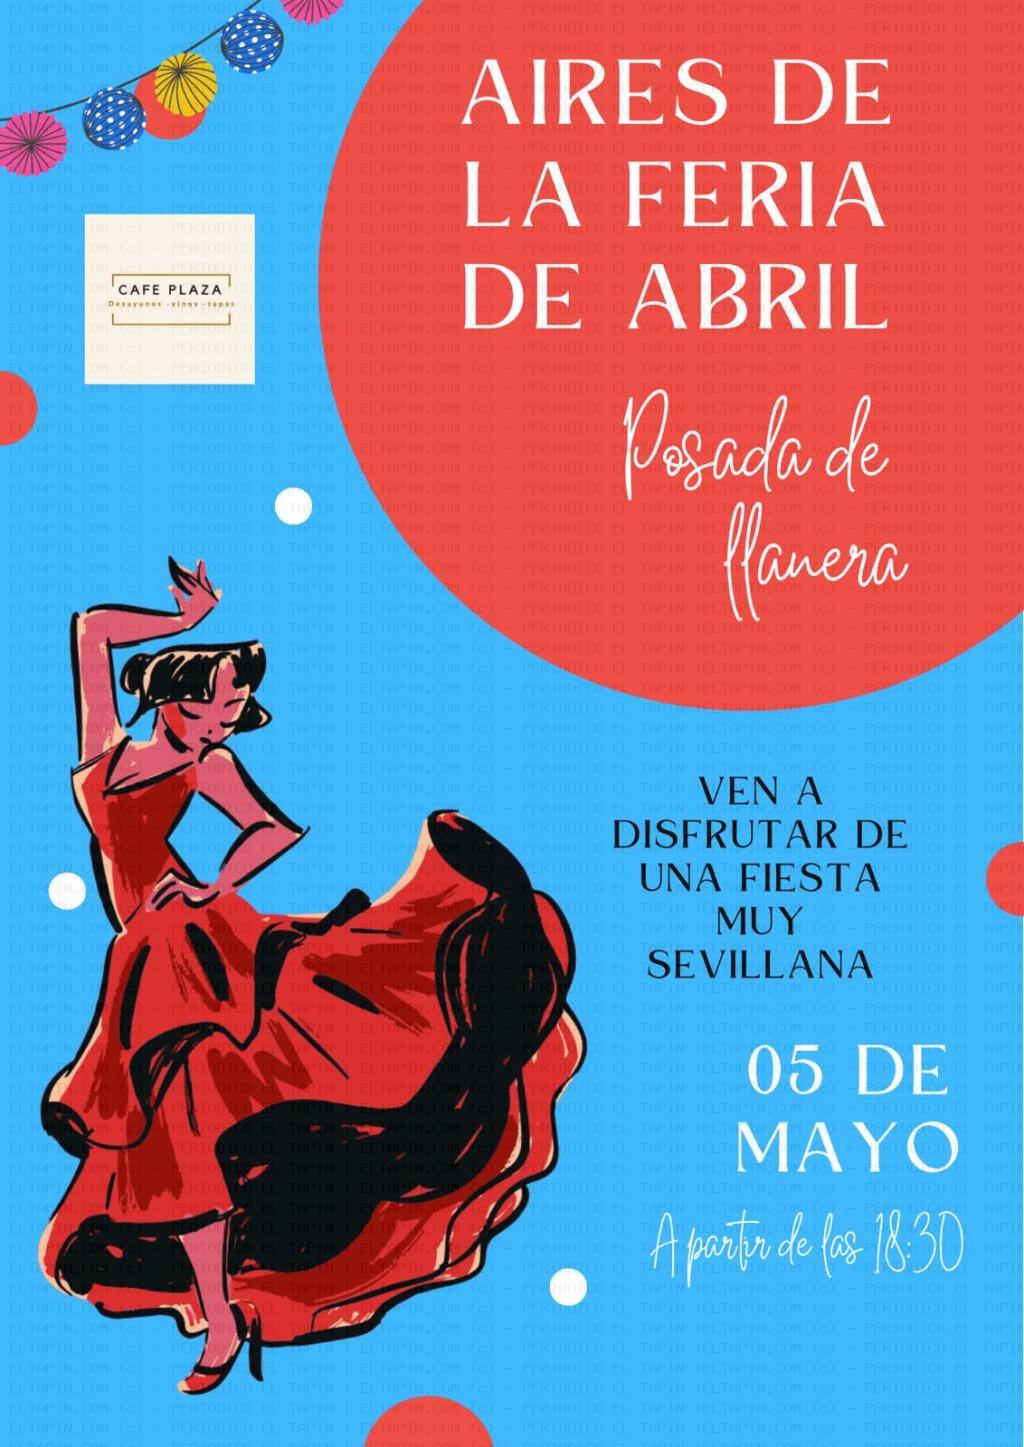 El Tapin - Aires de la Feria se Abril en el Café Plaza el 5 de mayo